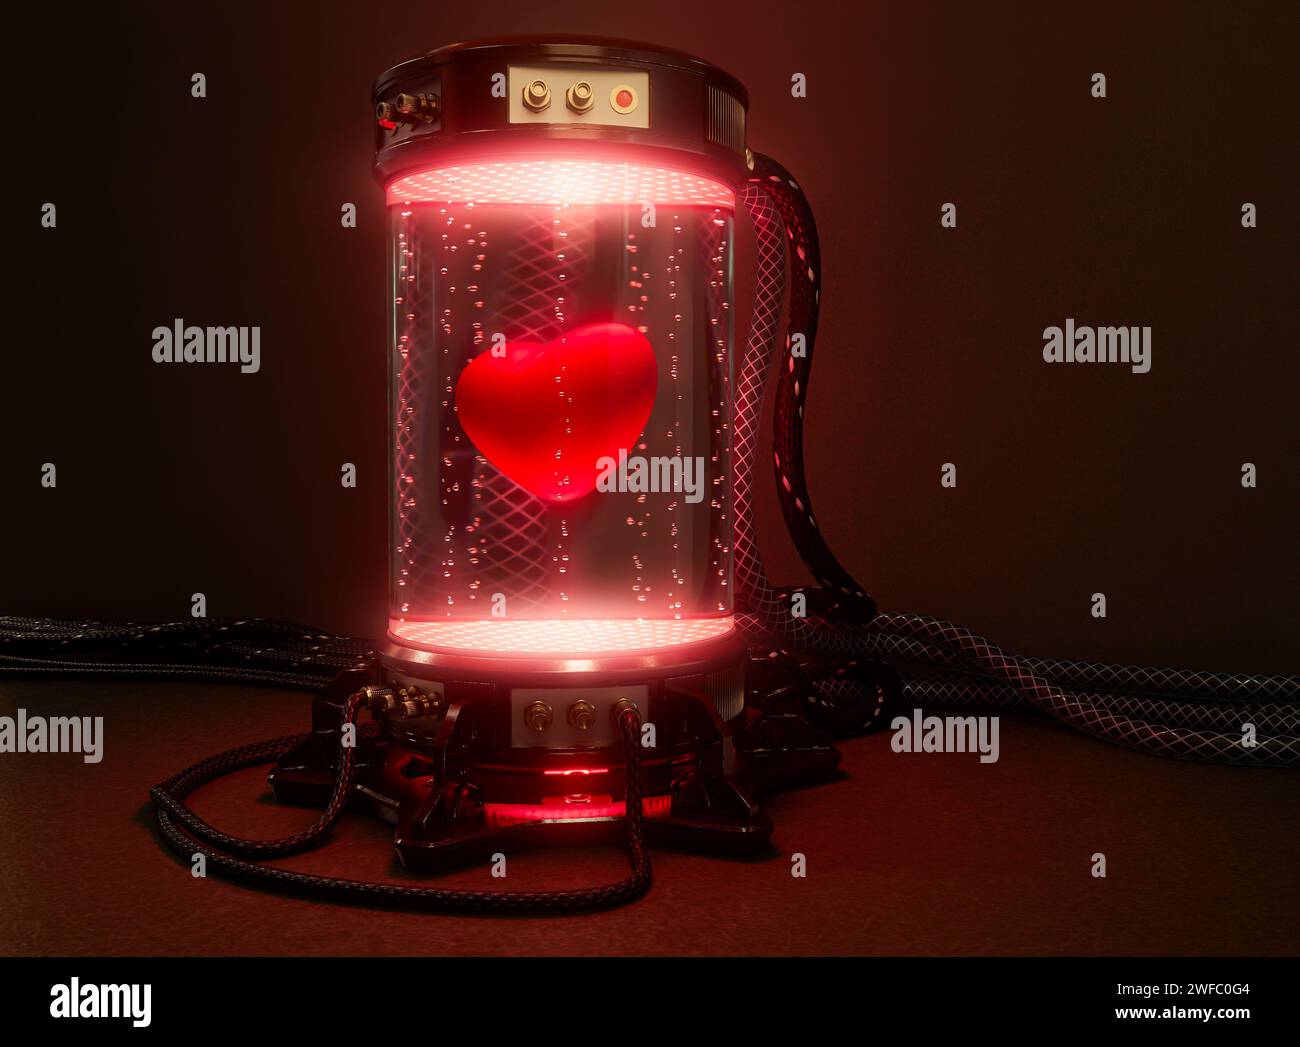 Una macchina per provette criogeniche per laboratori scientifici futuristici e scuri riempita di liquido e bolle d'aria incandescenti e un cuore rosso con cavi collegati e strofinamento Foto Stock